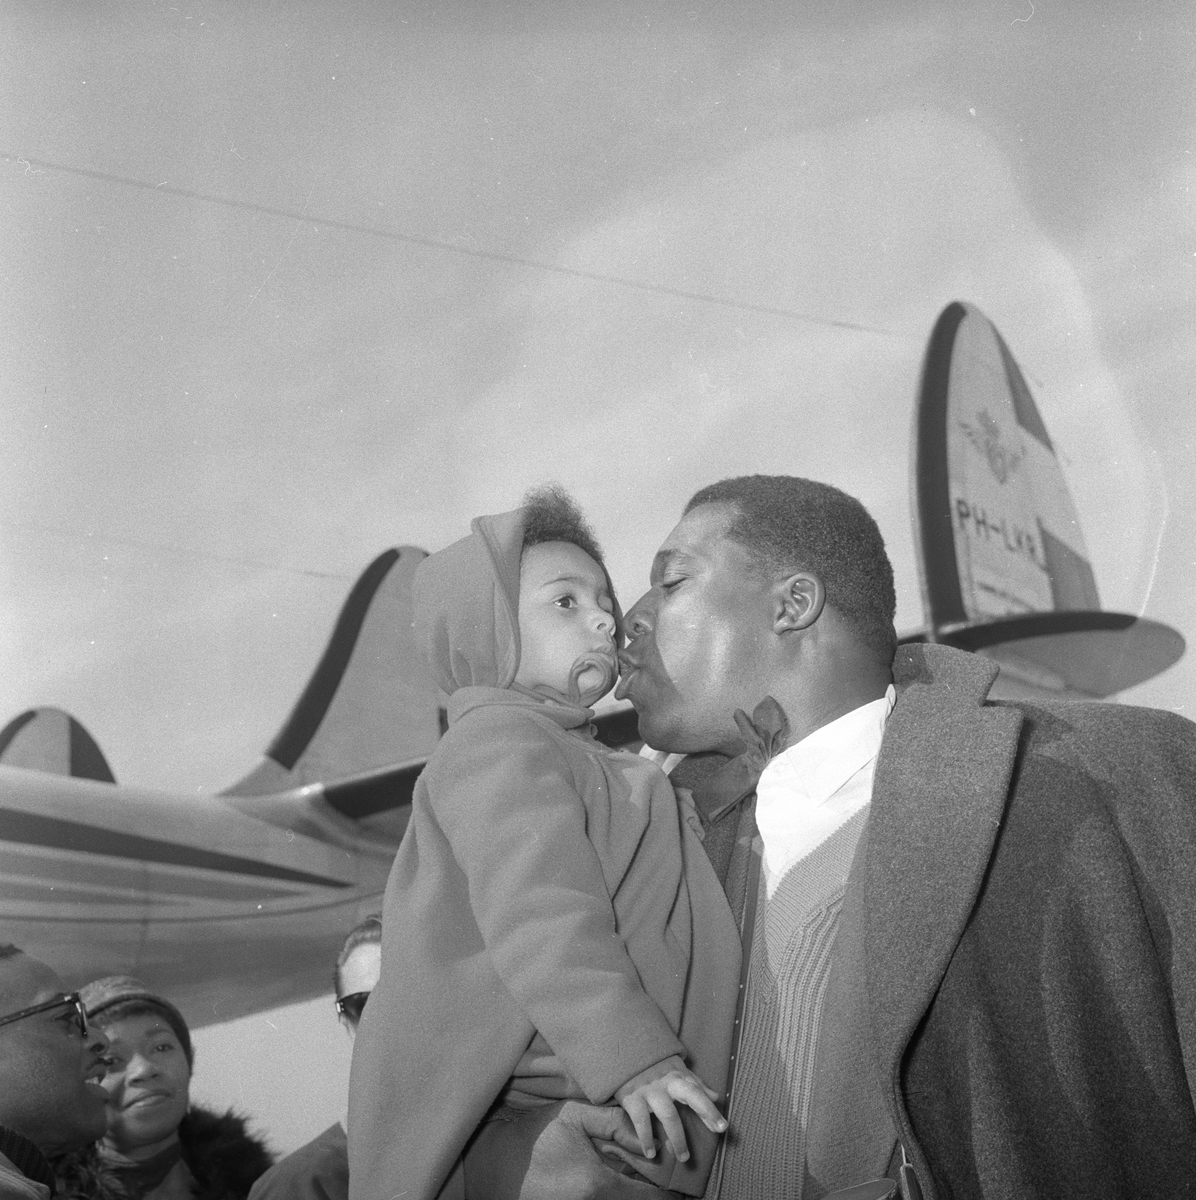 Sangere til oppsetning av "Porgy and Bess" på Folketeatret. John McCurry sammen med datteren, et fly i bakgrunn. Fotografert april 1956.